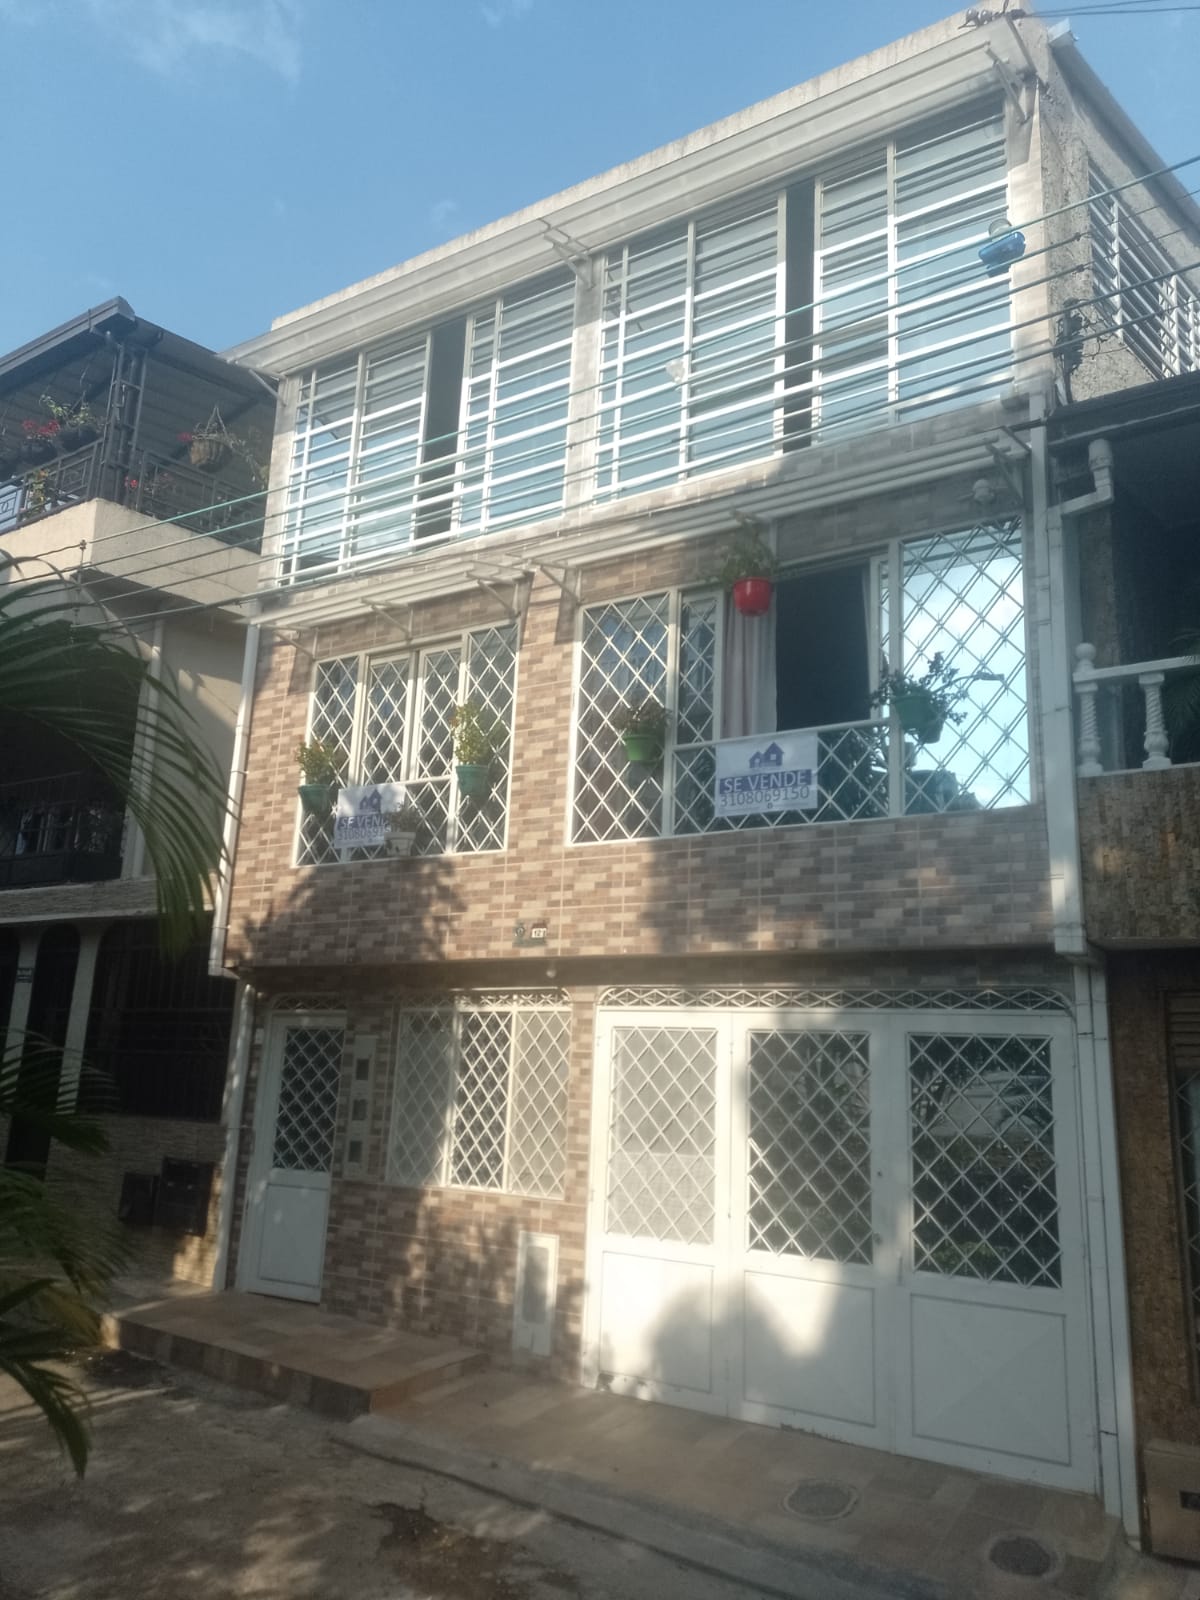 Casa rentable en venta Ibagué Tolima